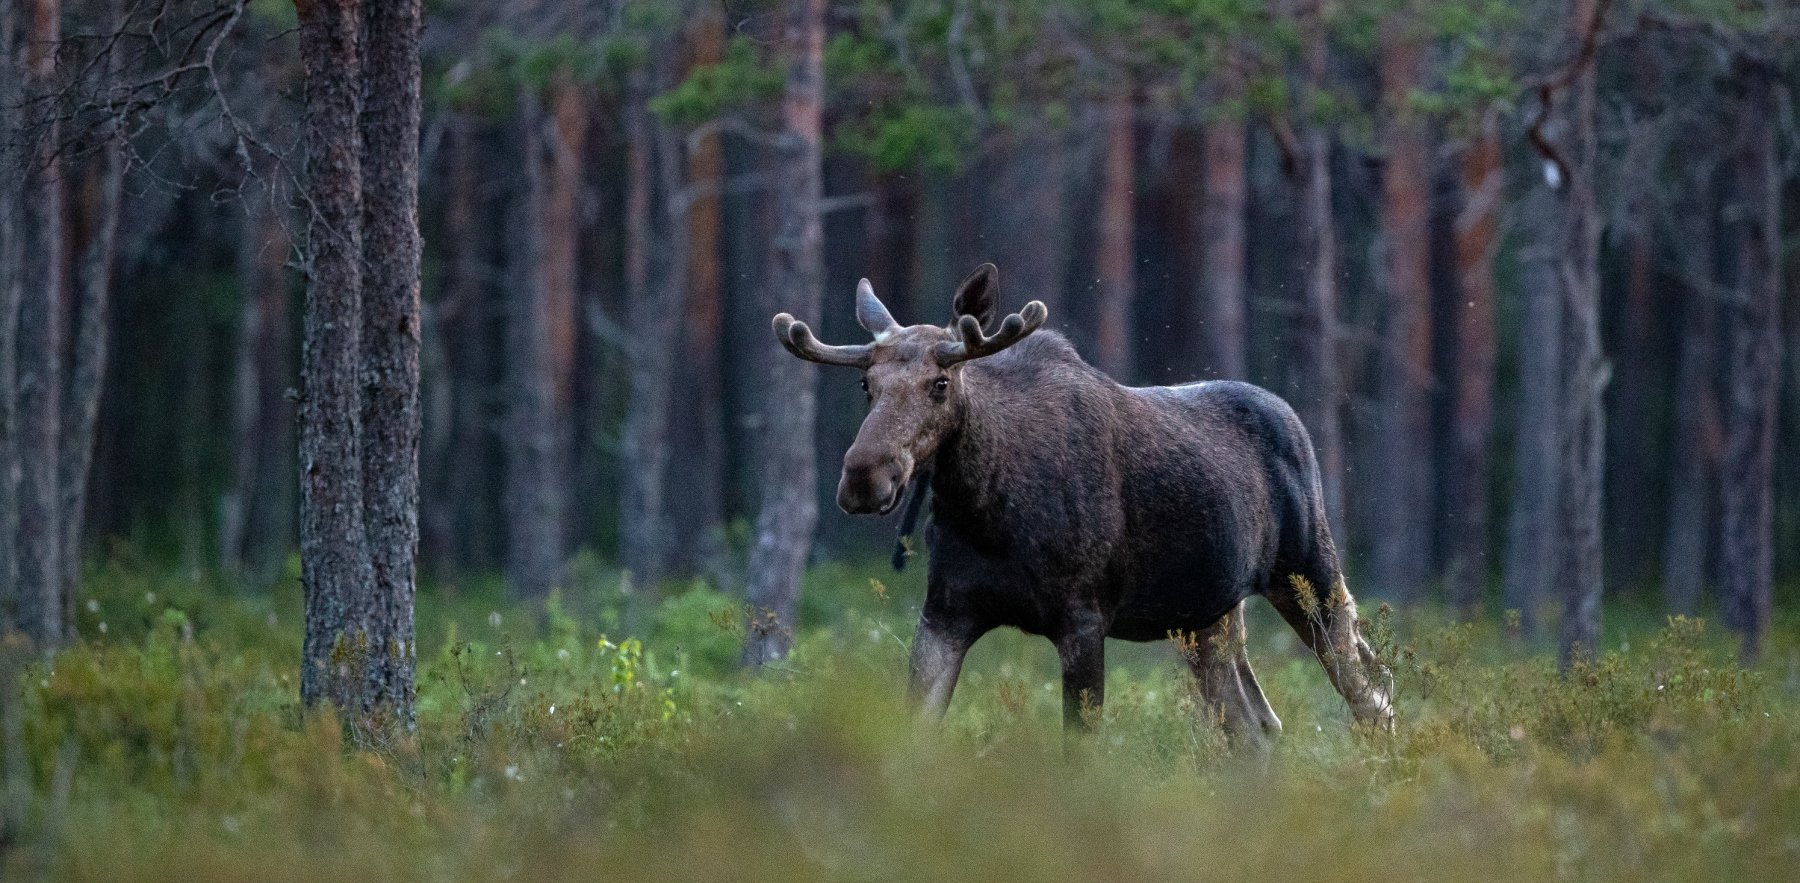 Estland: Ein Elch erscheint am Waldrand.